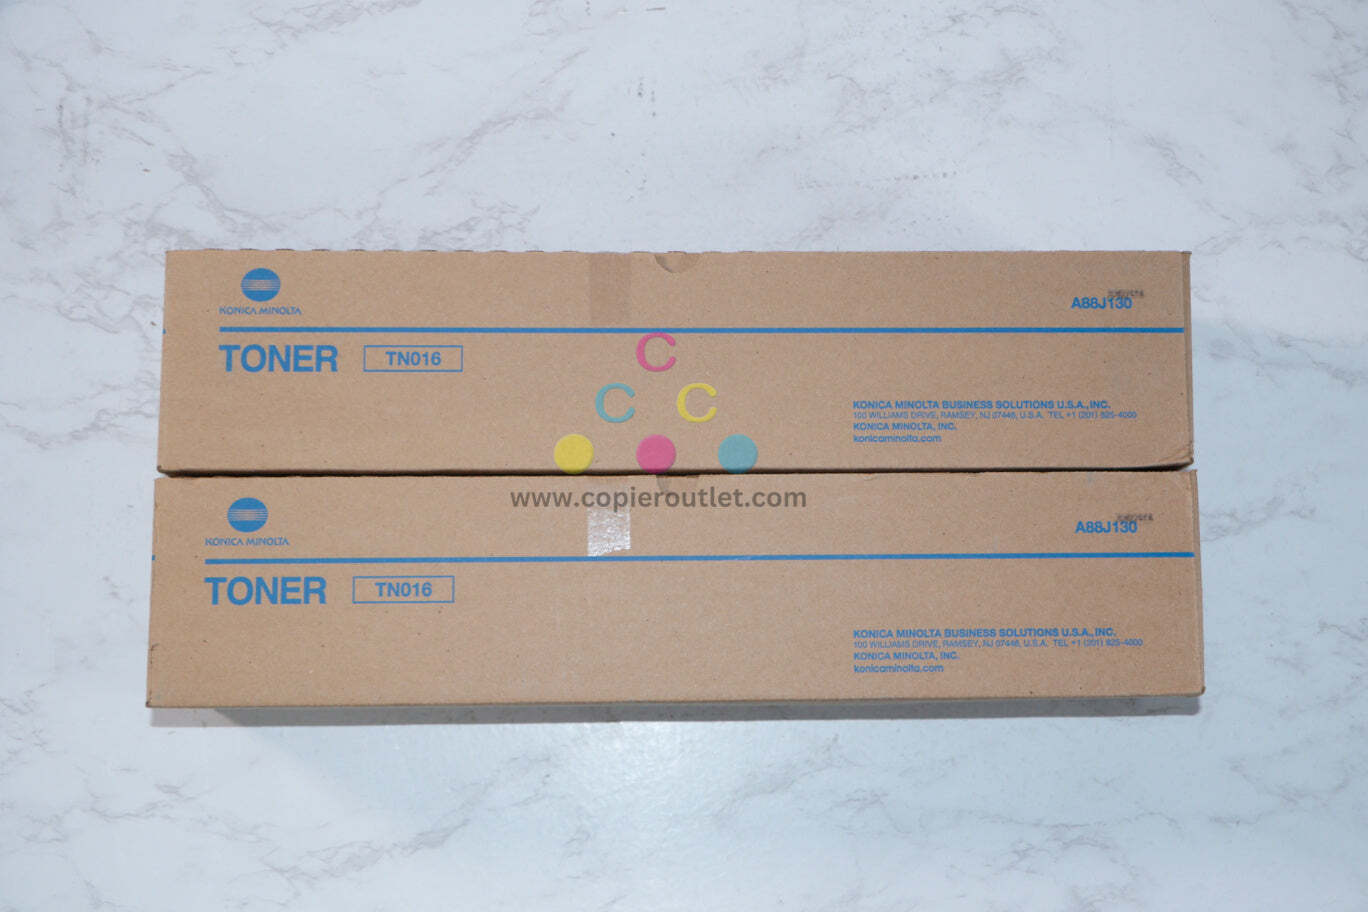 2 New OEM Konica Minolta BizHub Pro 1100 Black Toners TN016 (A88J130)